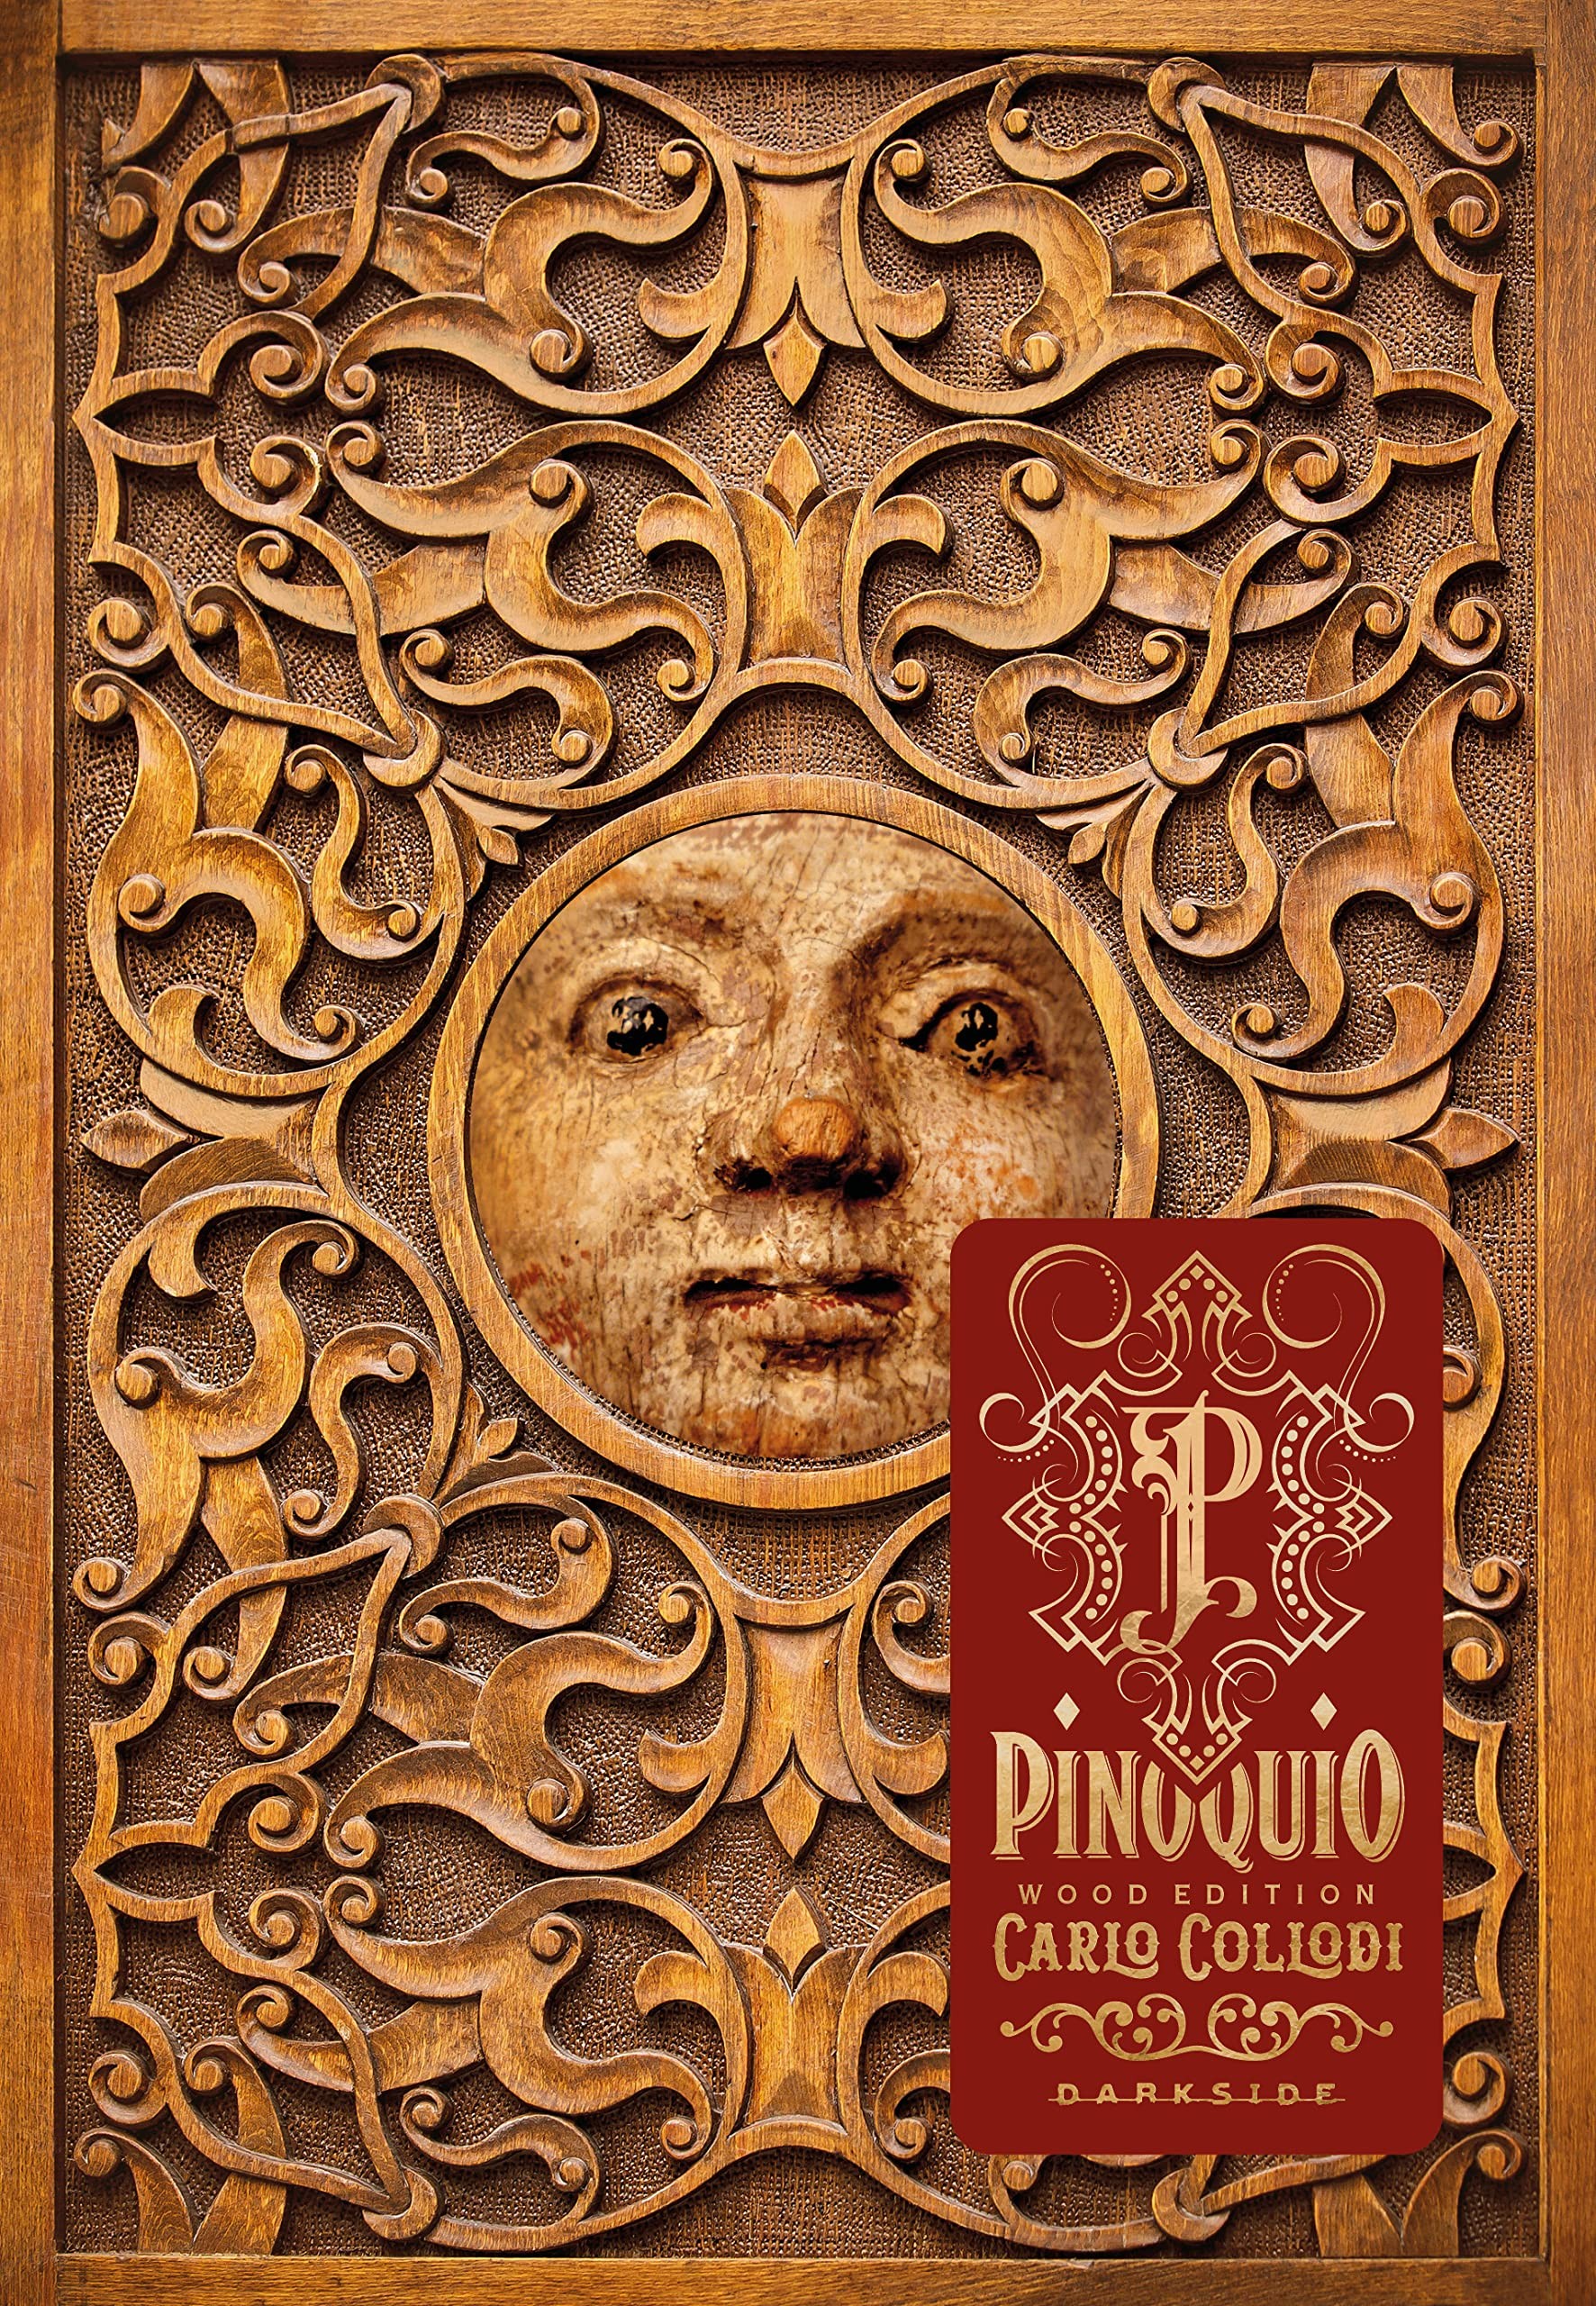 Pinóquio: Wood Edition, de Carlo Collodi (DarkSide, 256 páginas • Impresso: R$ 64,90) (Foto: Divulgação)